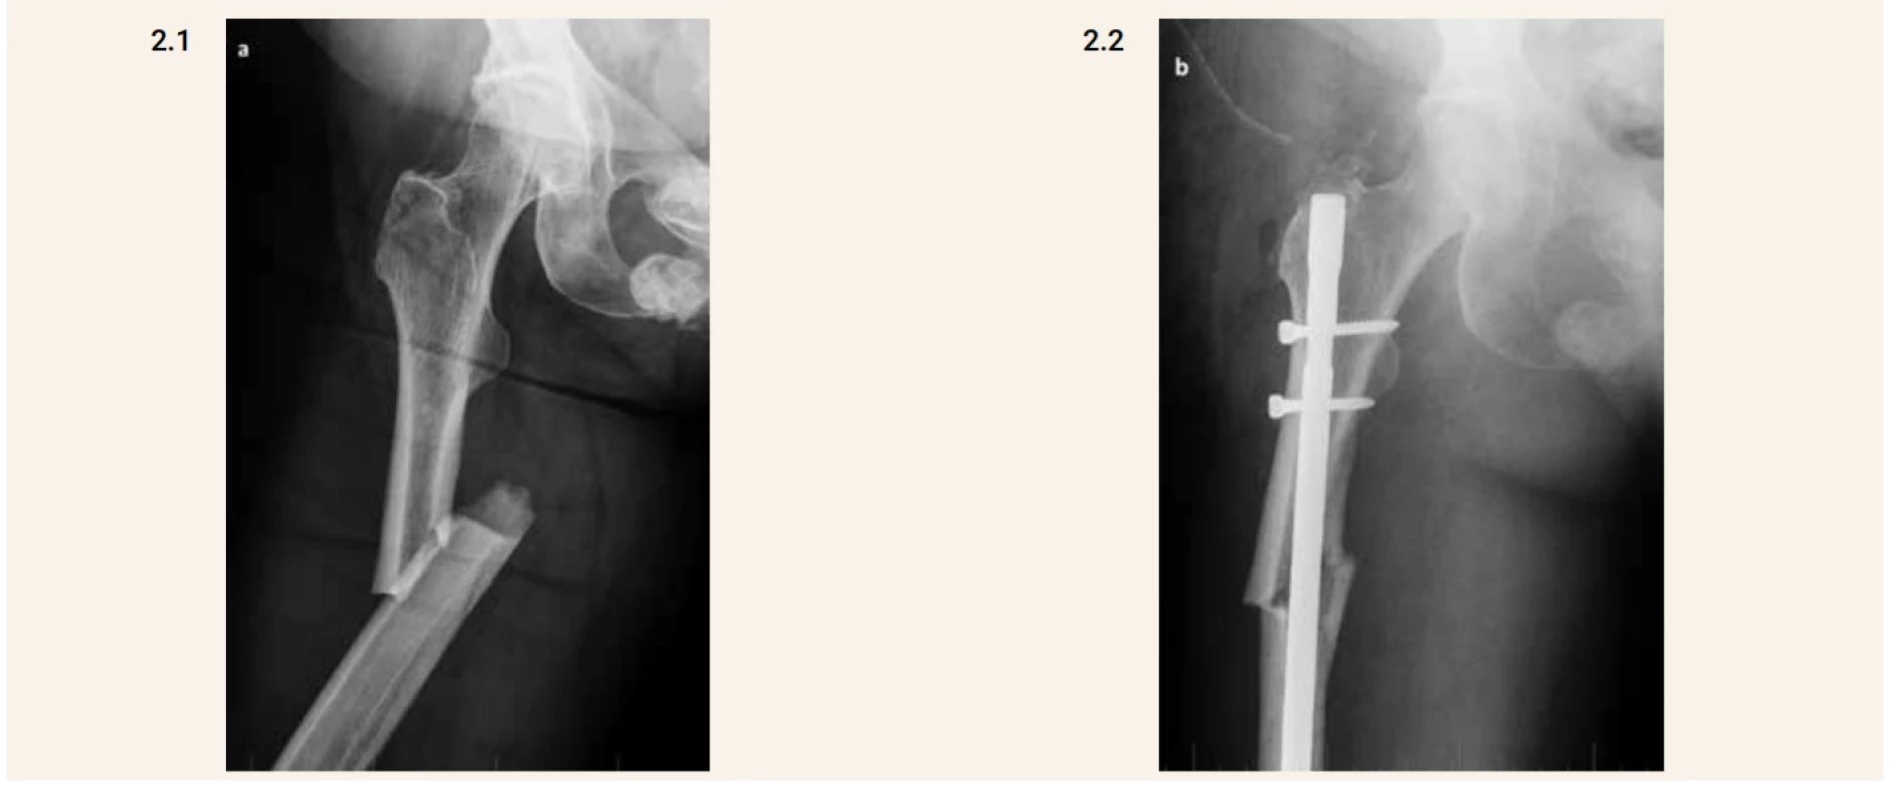 Kompletní atypická fraktura diafýzy femuru vpravo (2.1) a pooperační snímek (2.2). Je patrný horizontální průběh lomné linie v laterálním ztluštělém kortexu a dále šikmý průběh mediálním směrem.
Šikmý typ zlomeniny je lépe vidět na pooperačním snímku 